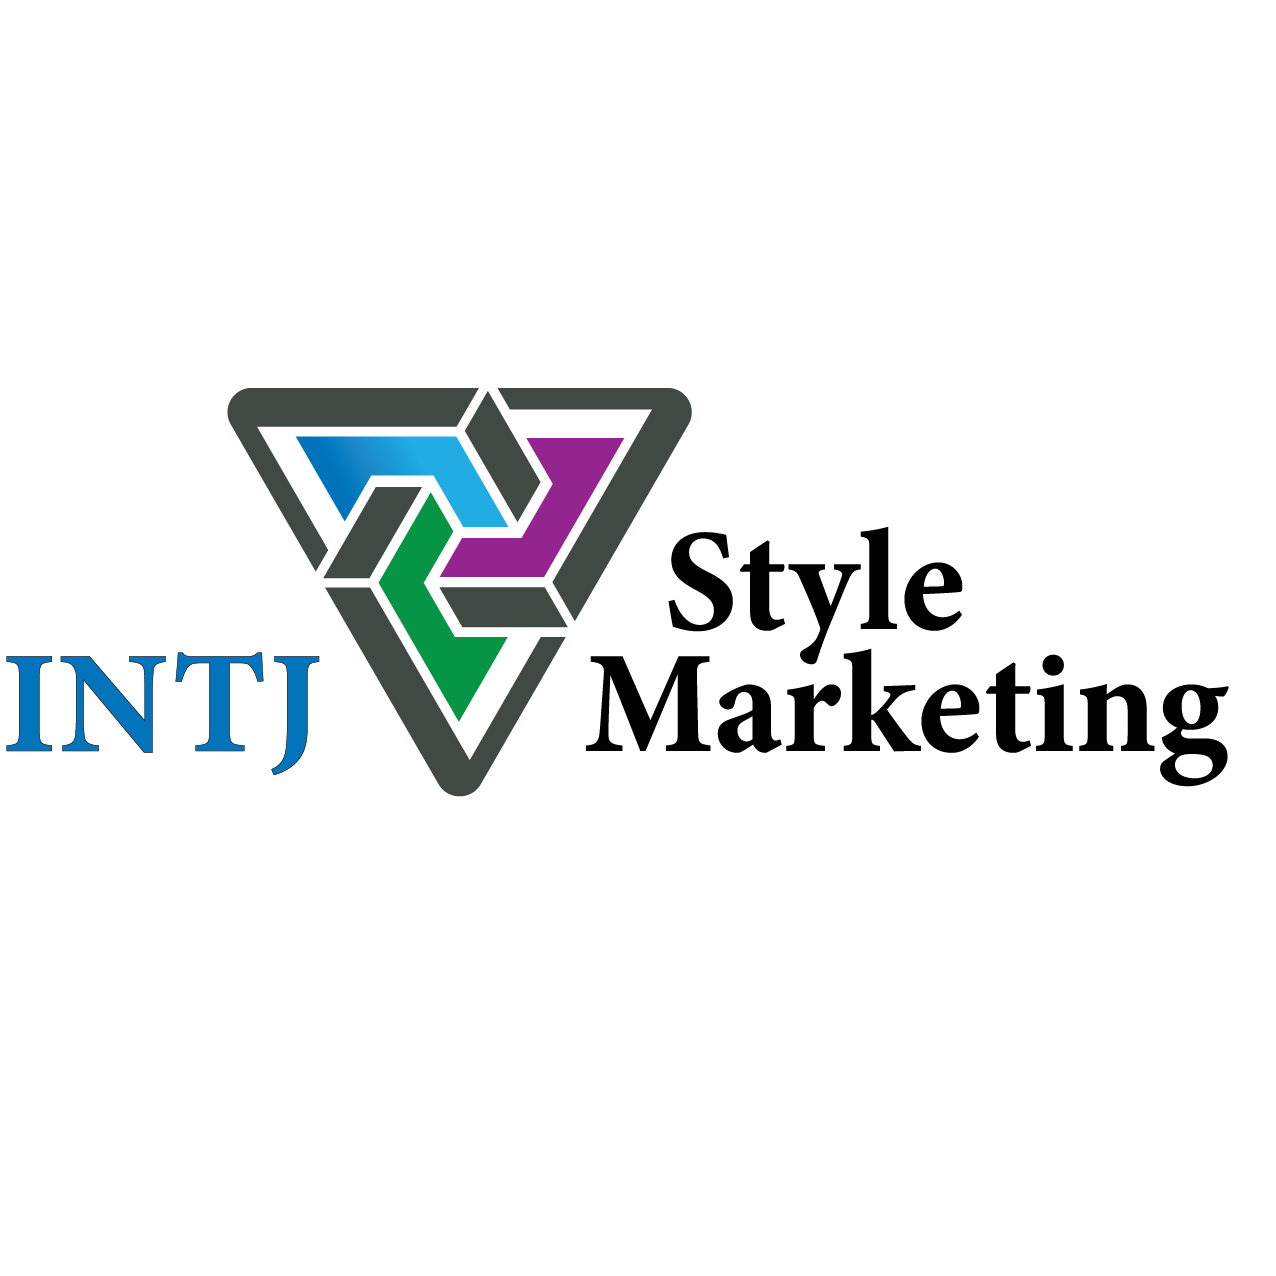 INTJ Style Marketing - Calgary, AB T2H 2W2 - (587)870-6474 | ShowMeLocal.com